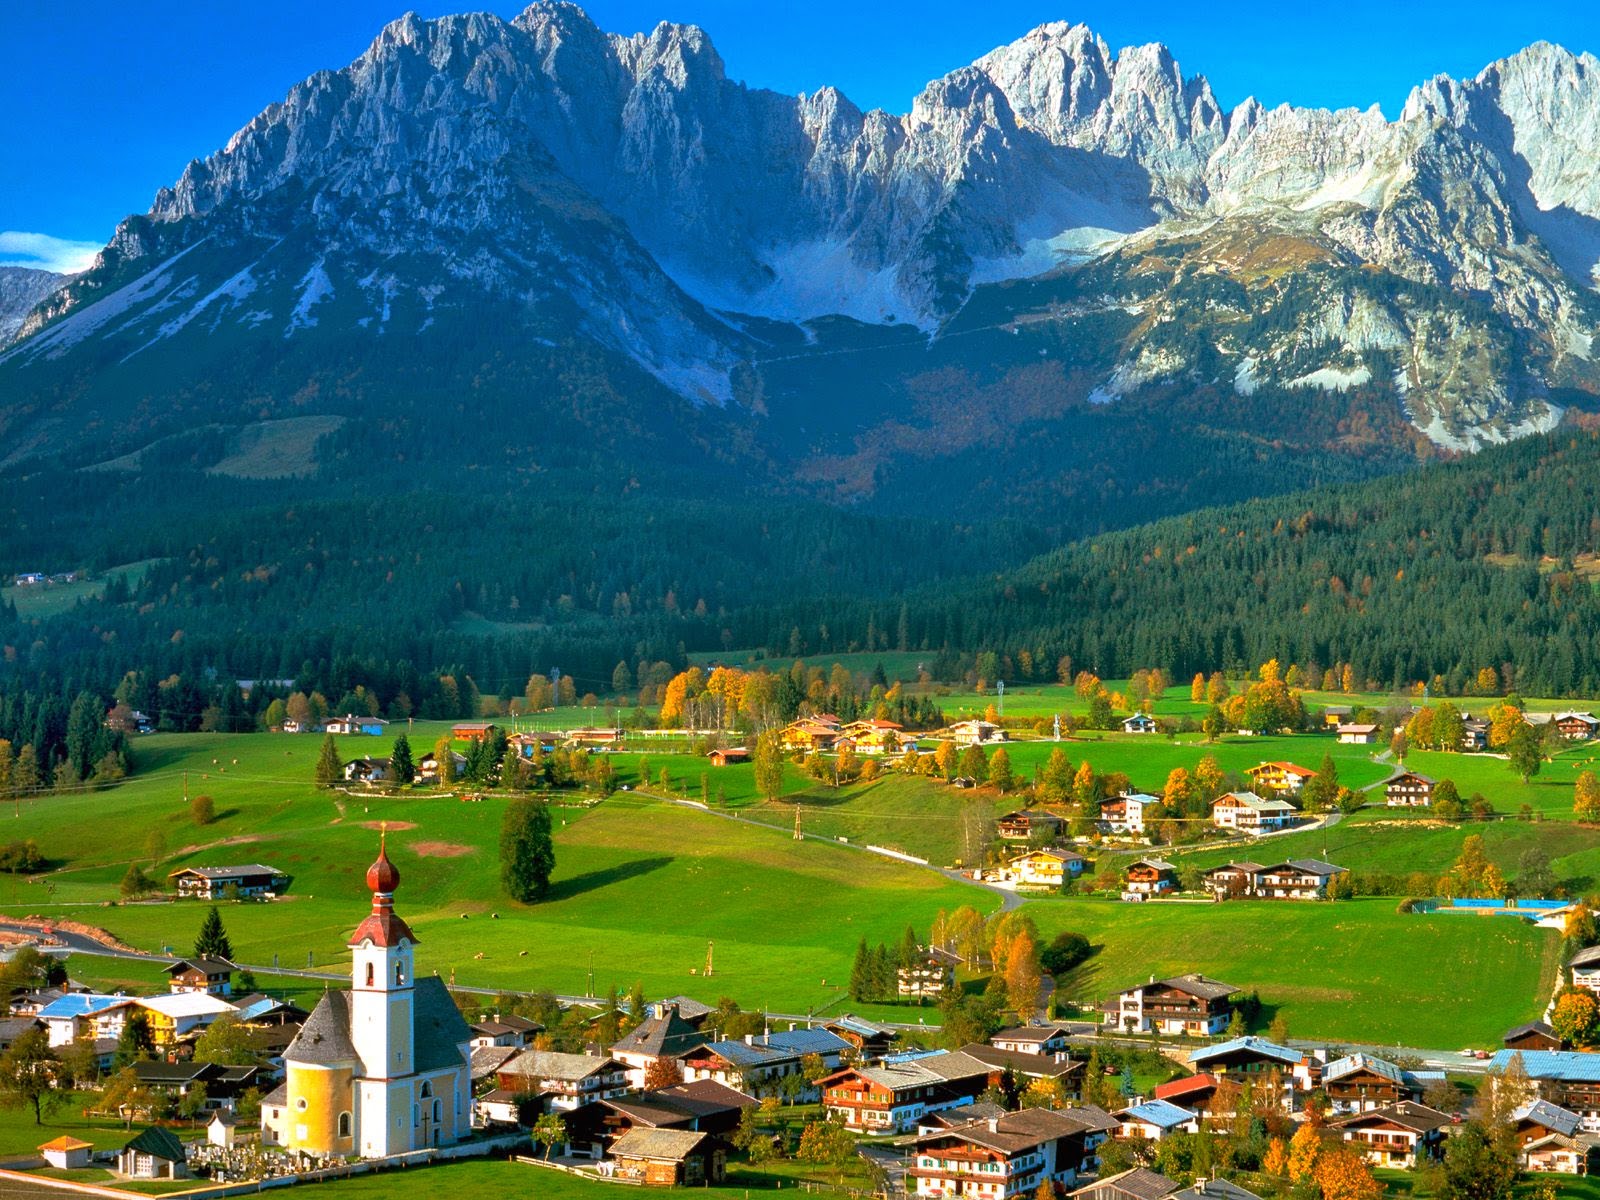 السياحة النمسا 2015, روعة السياحة Tyrol-Austria-austria-31748795-1600-1200.jpg